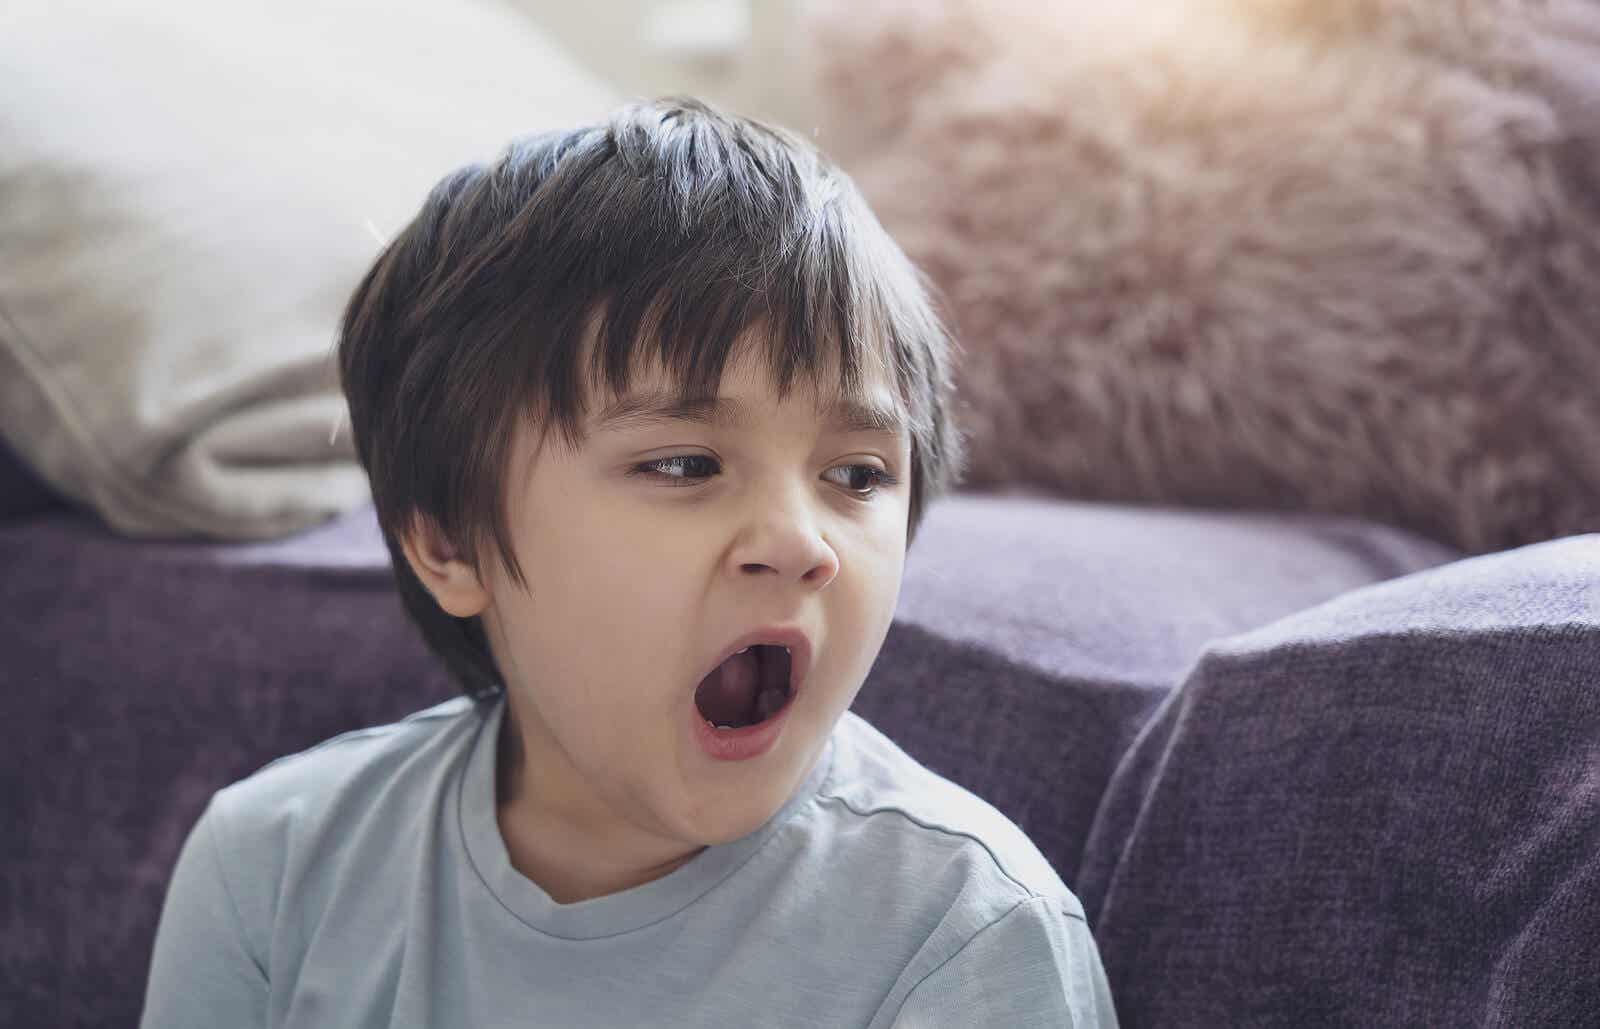 A child yawning.